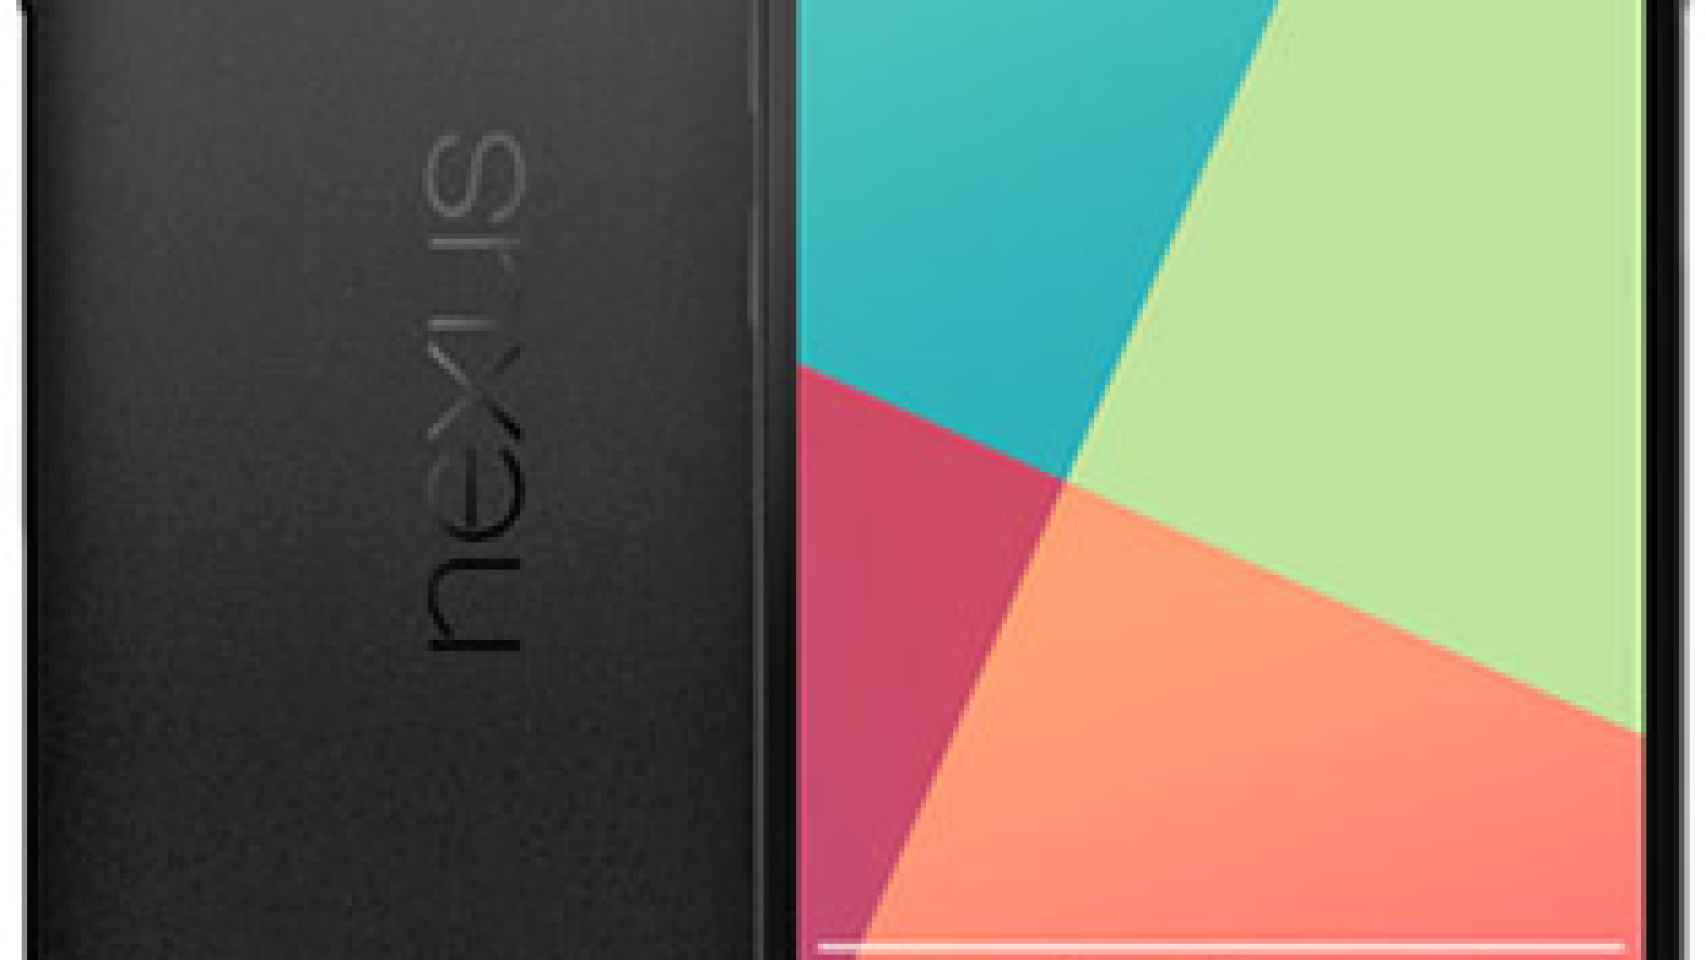 LG Nexus 5 podría tener dos versiones: 16 GB con 2300 mAh y 32 GB con 3000 mAh